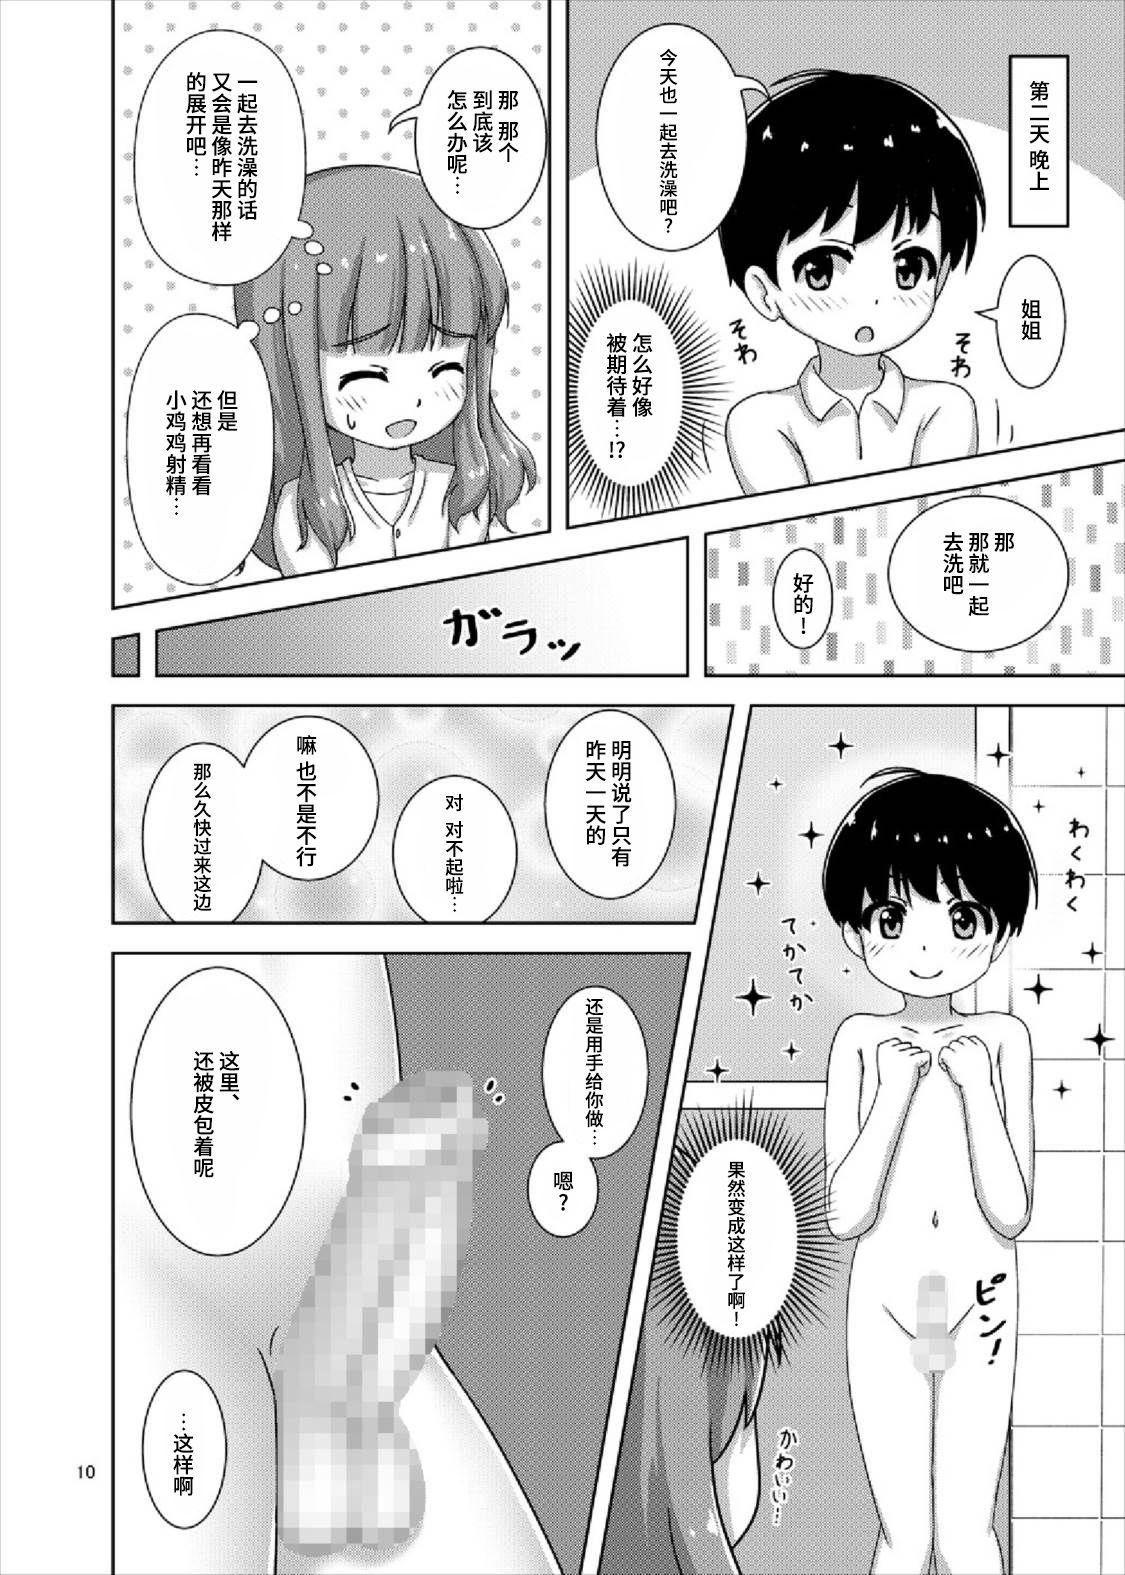 Tats Saorin to Shota no H na Itsukakan - Girls und panzer Sweet - Page 10